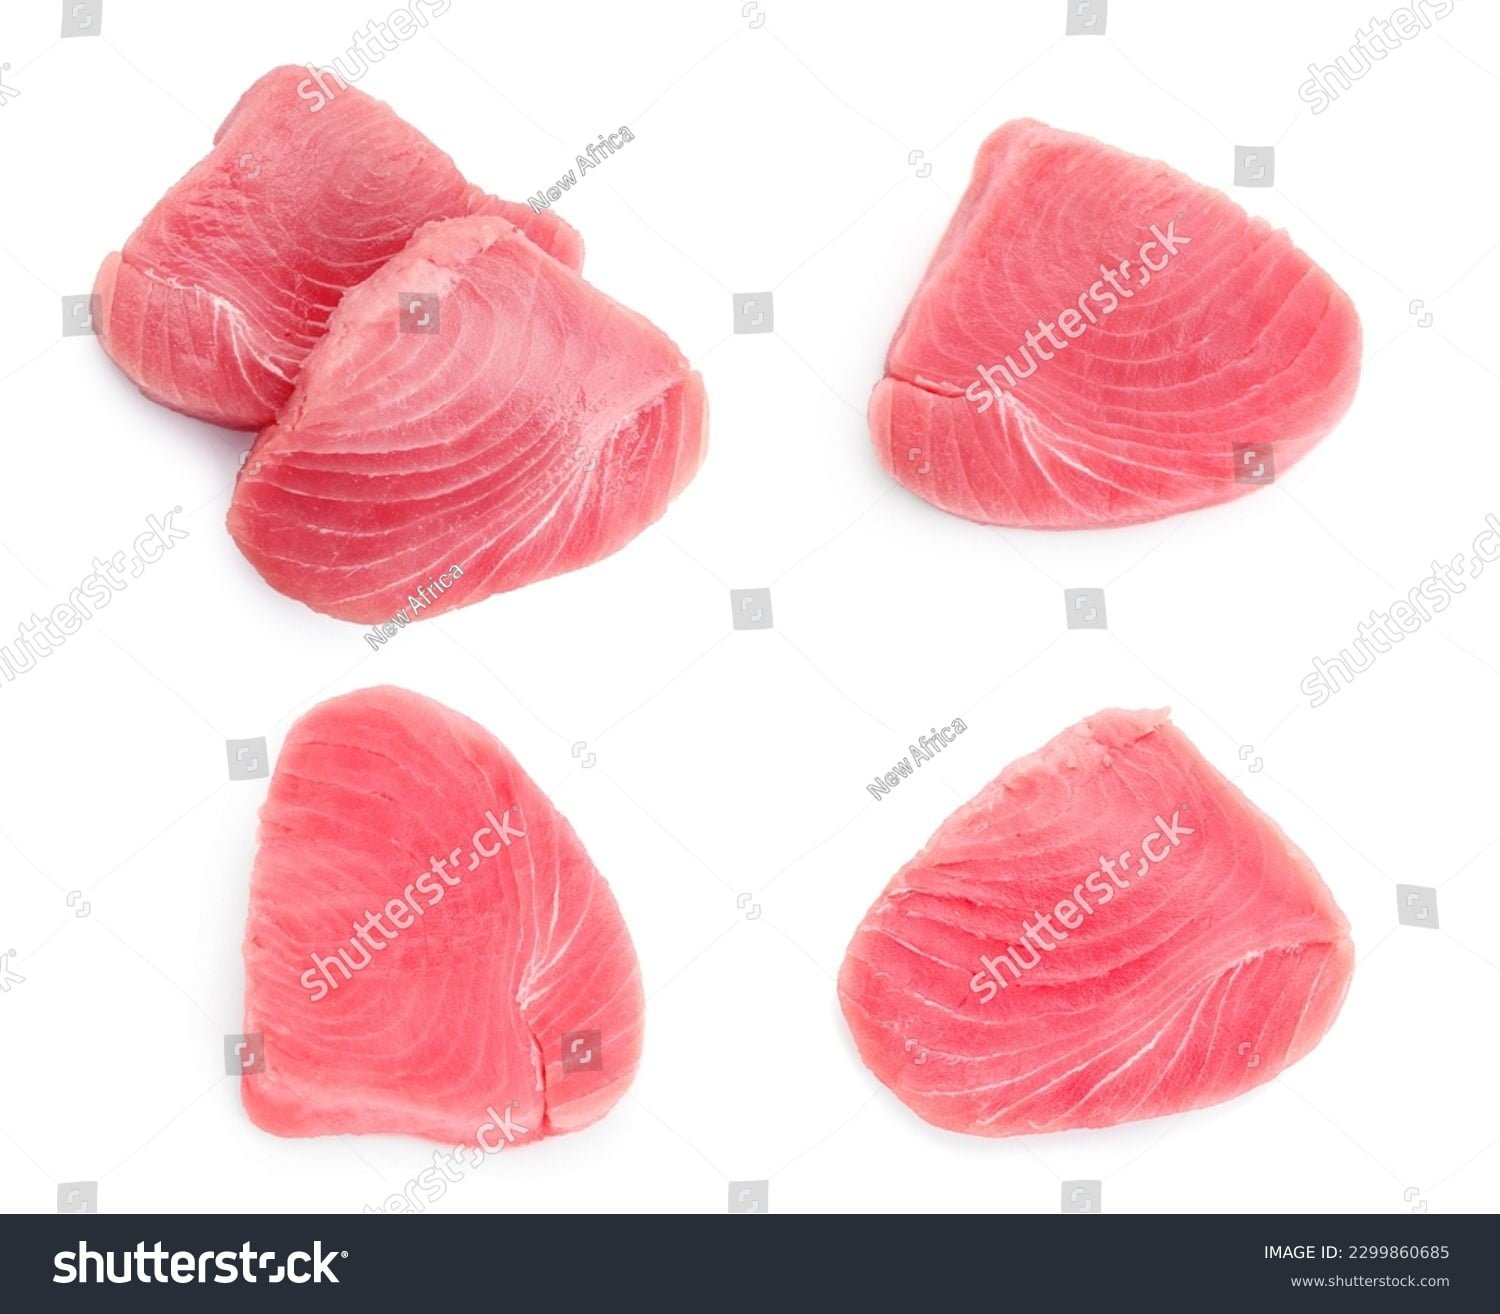 Tuna fresca cortada en rodajas